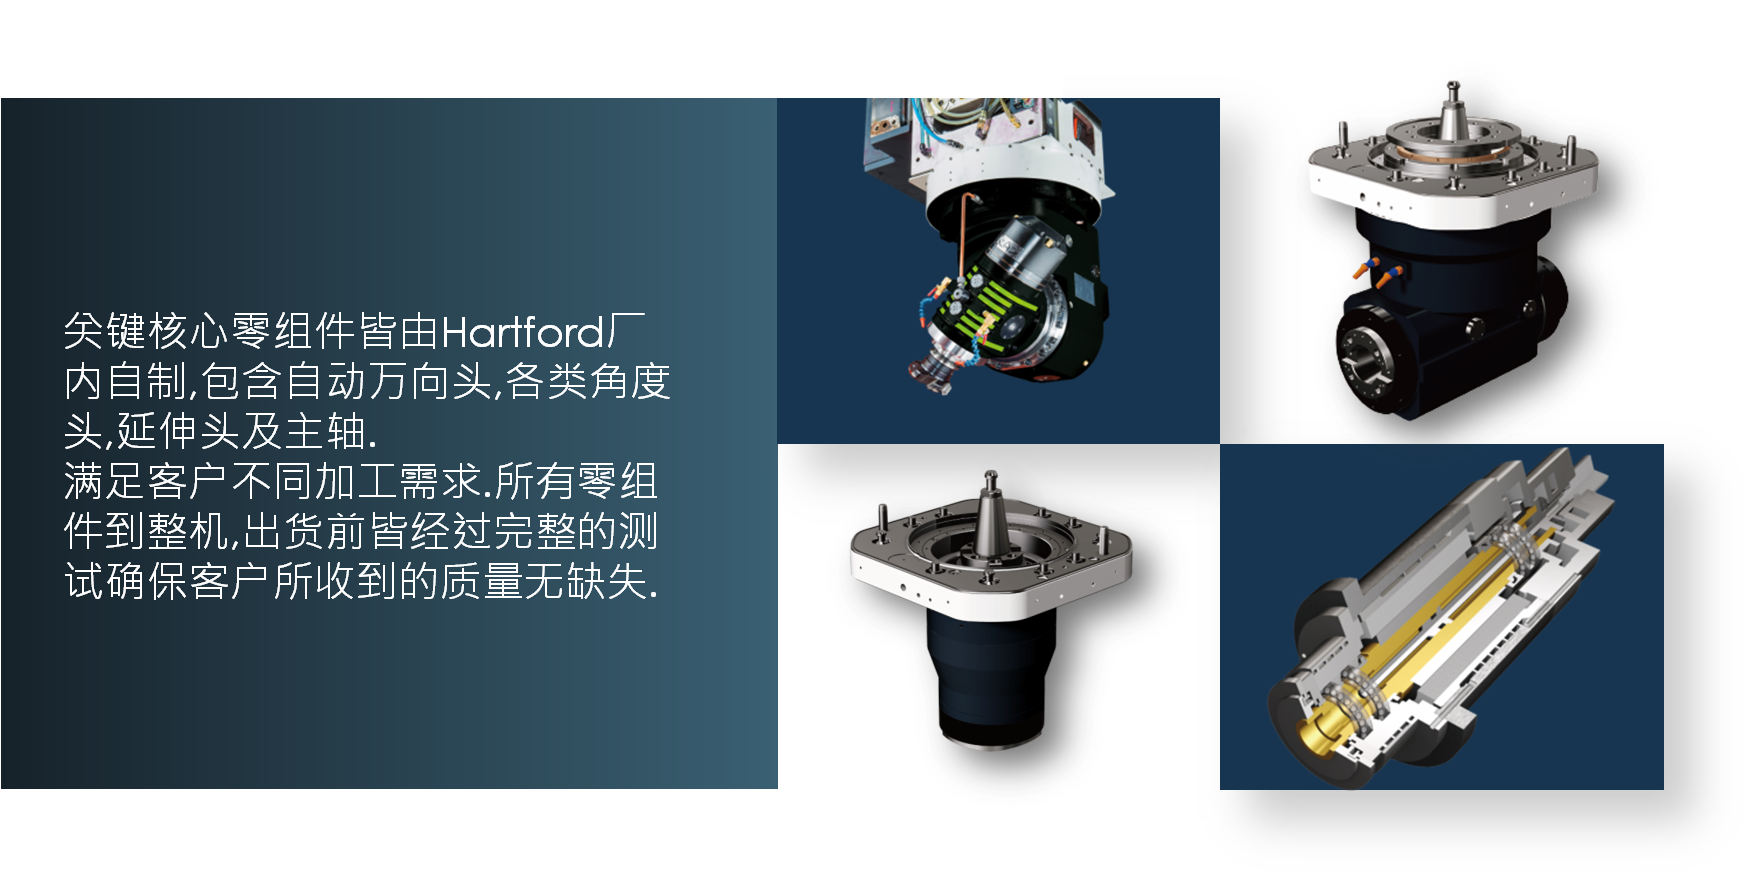 台湾协鸿机床关键核心零组件皆由Hartford 厂内自制